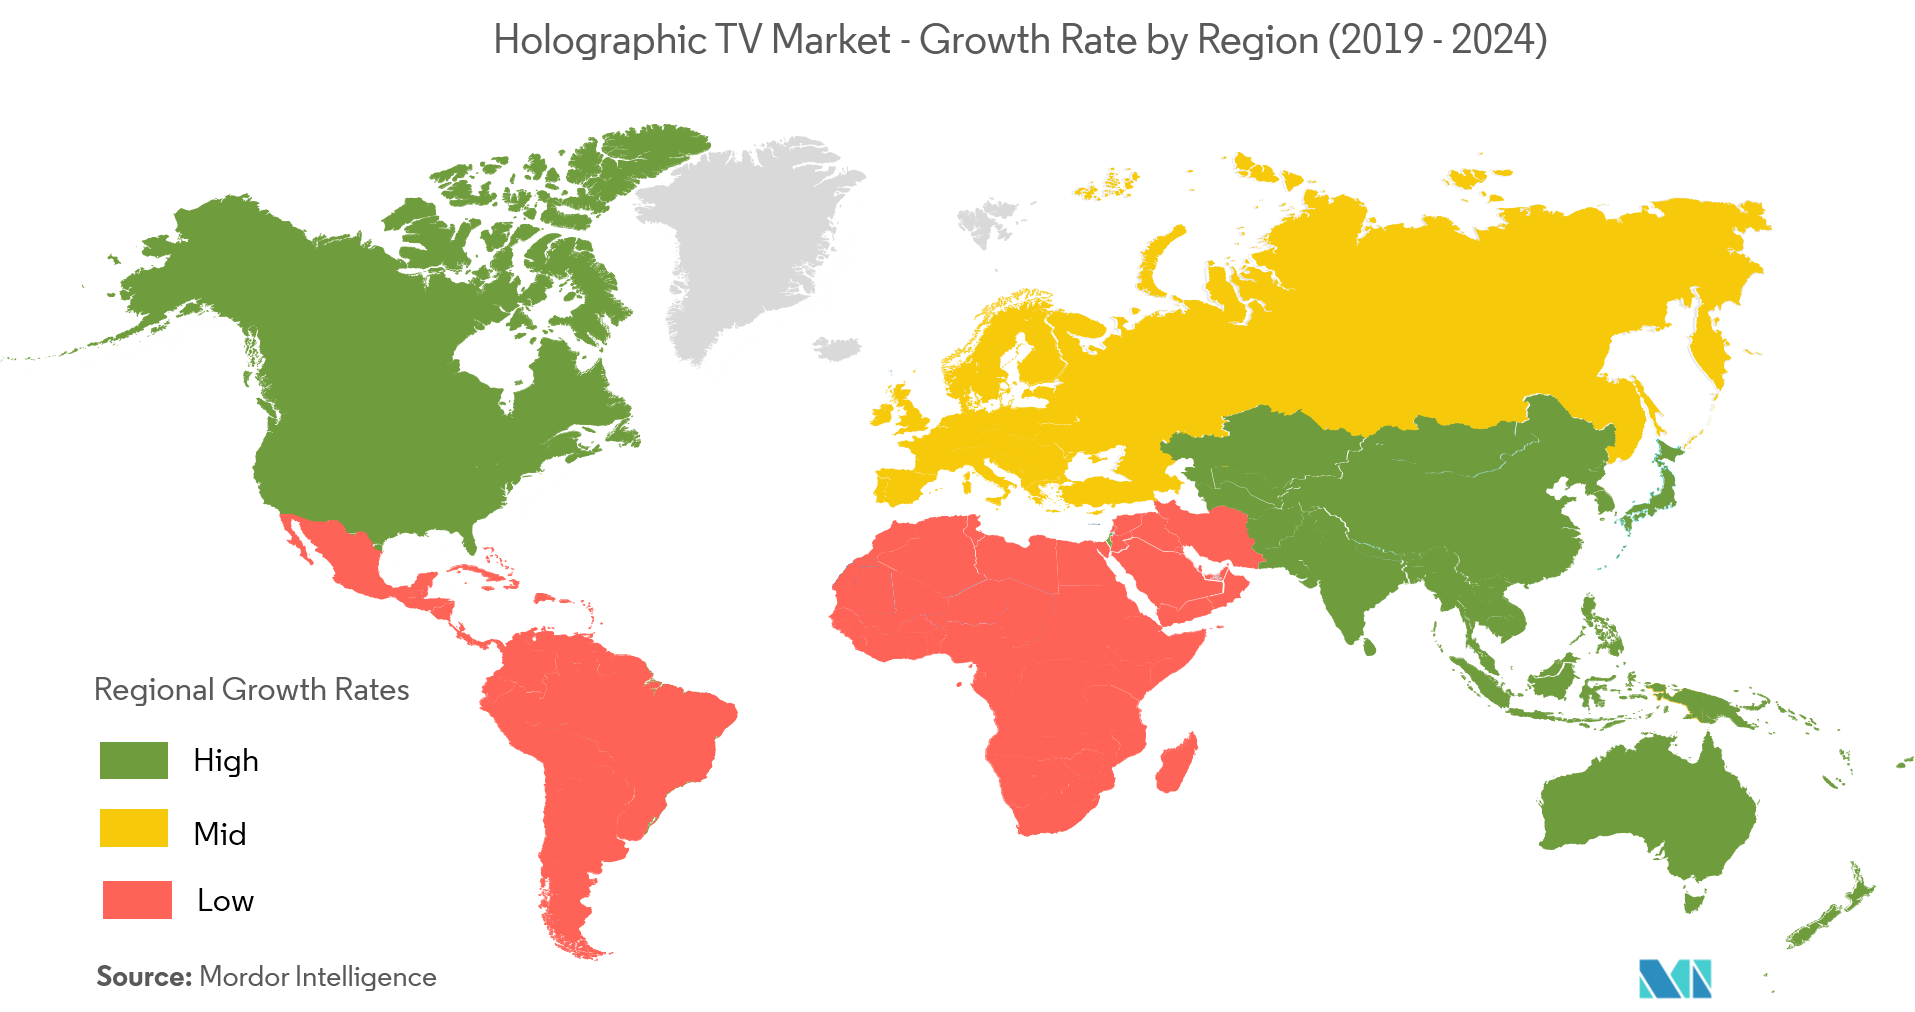 Wachstum des holografischen TV-Marktes